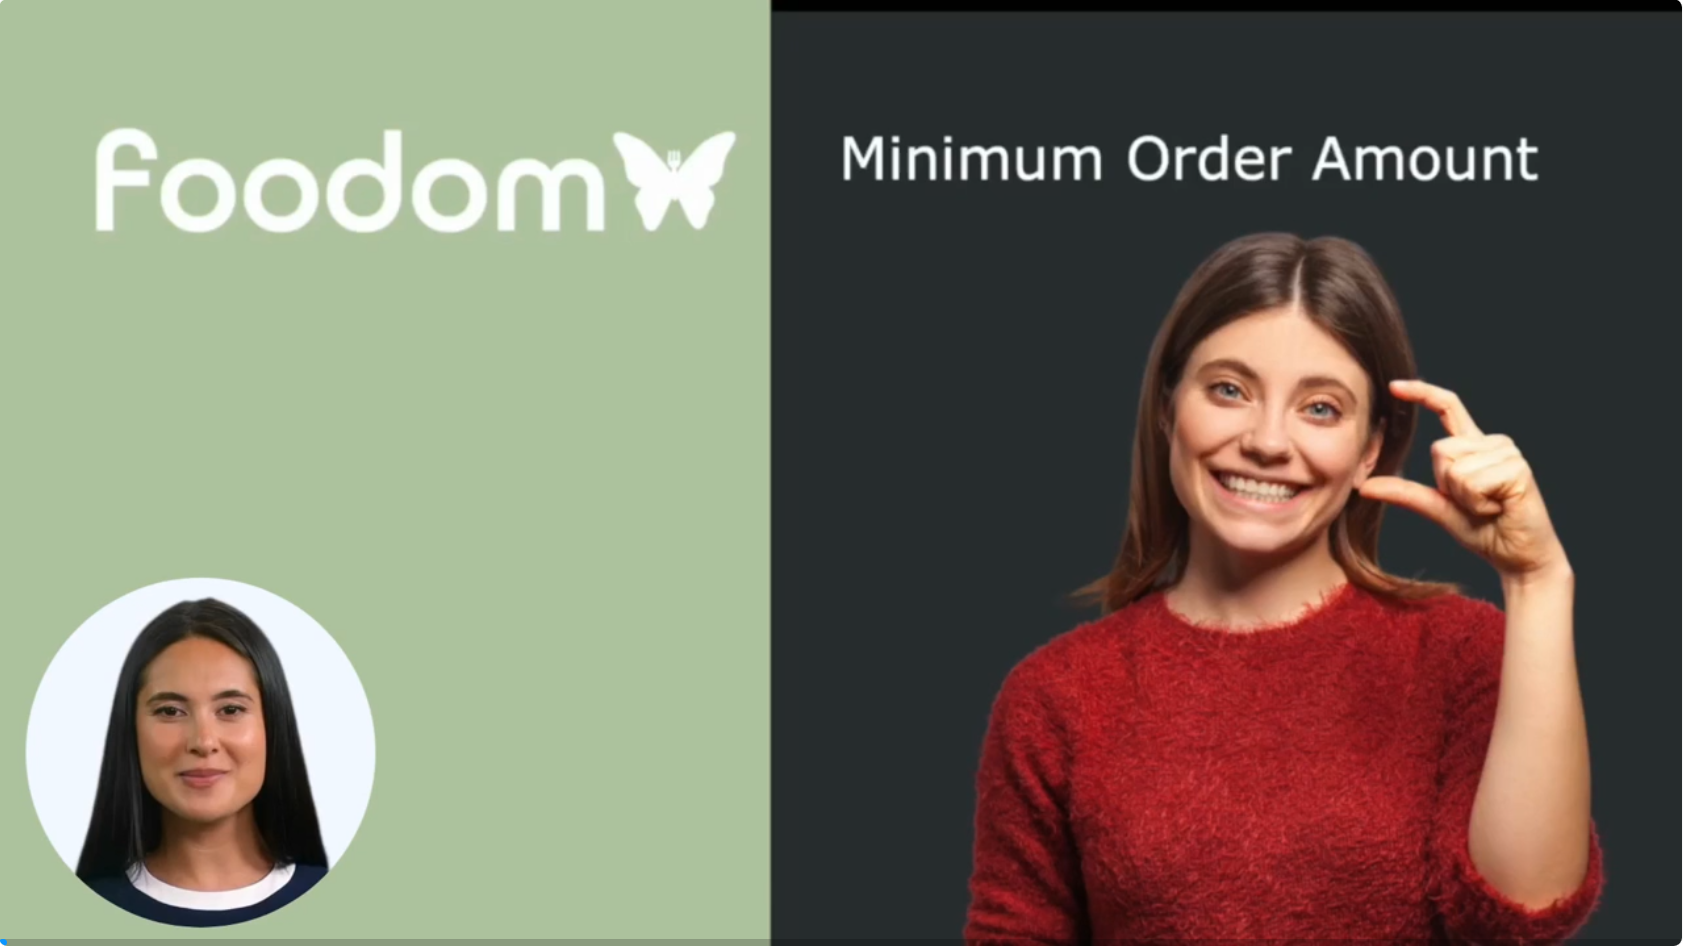 Minimum order amount